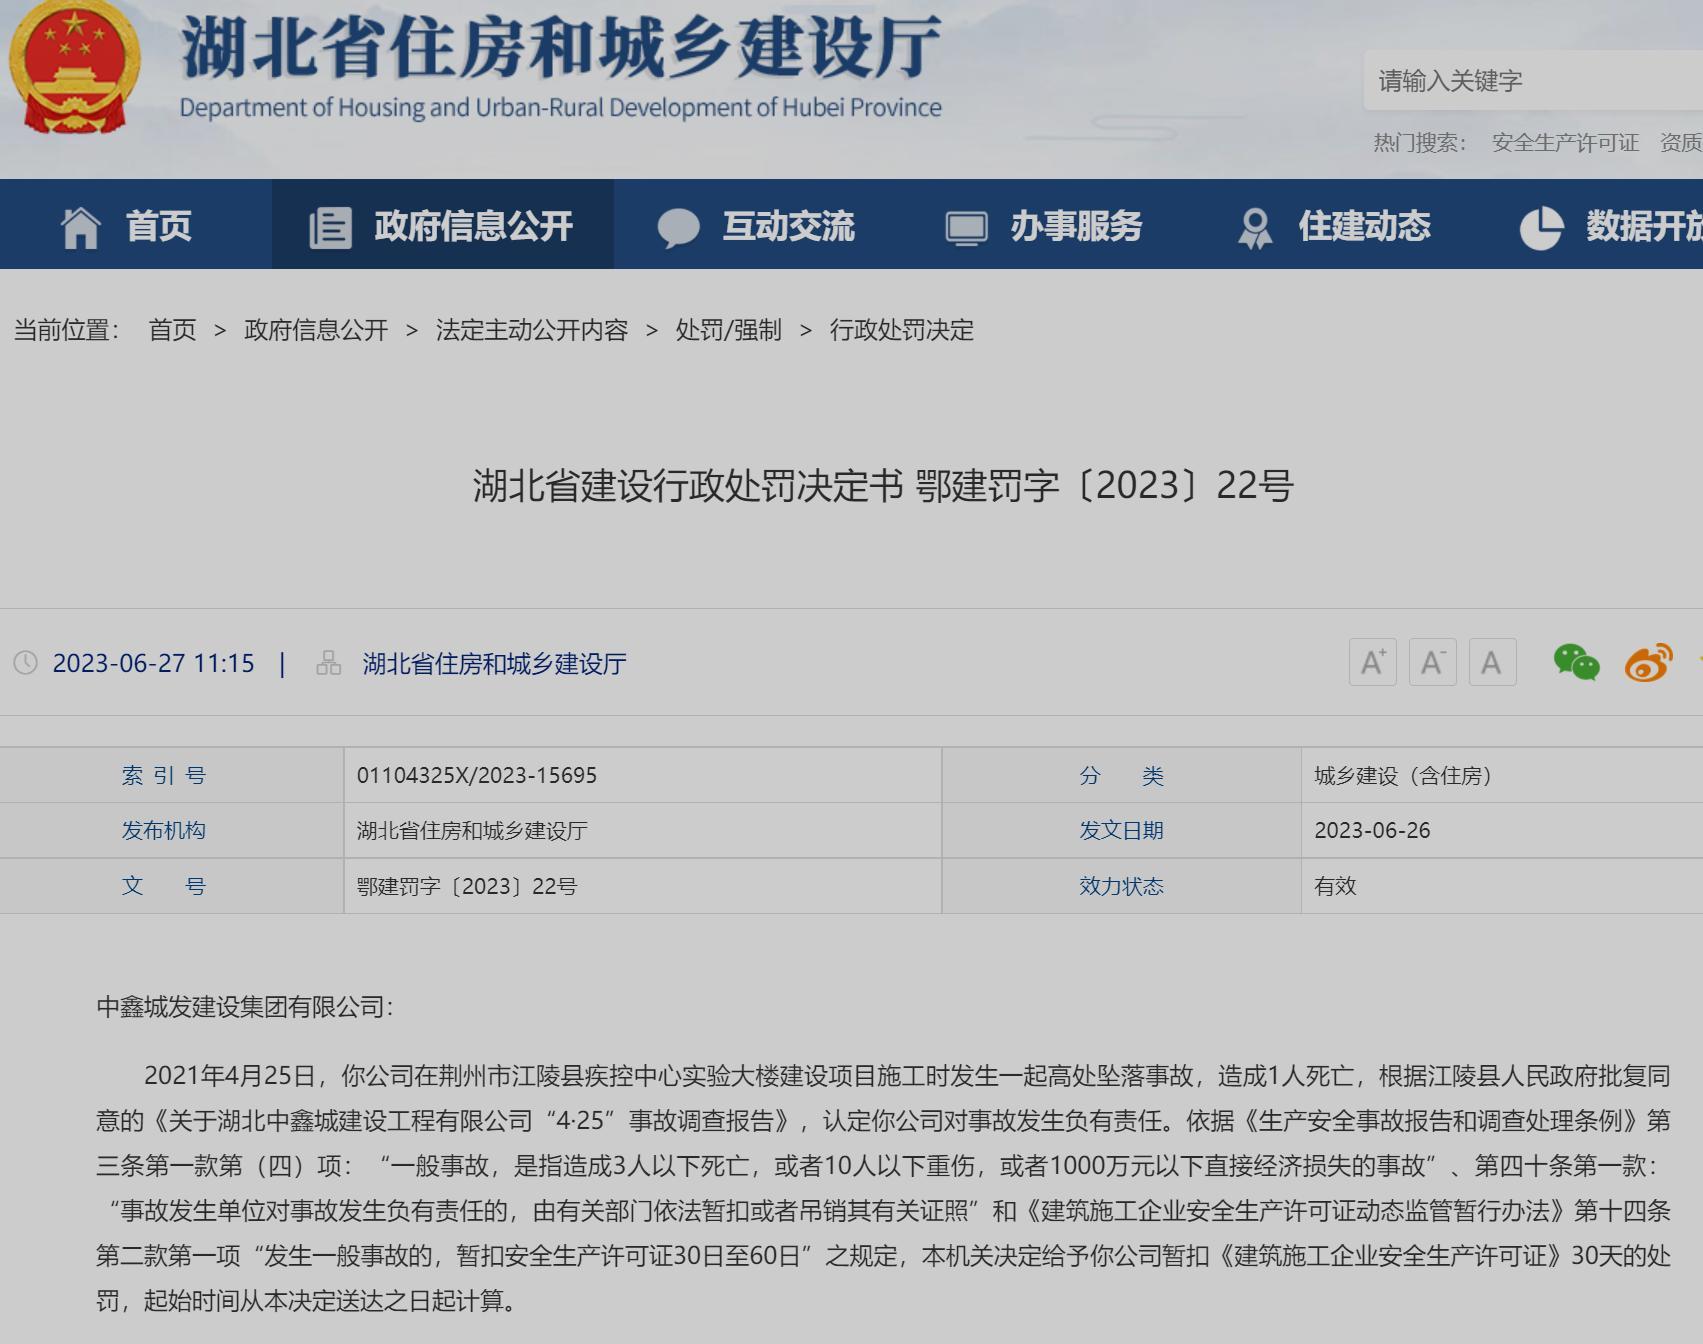 中鑫城发建设集团有限公司一项目发生死亡事故 被罚暂扣安全生产许可证